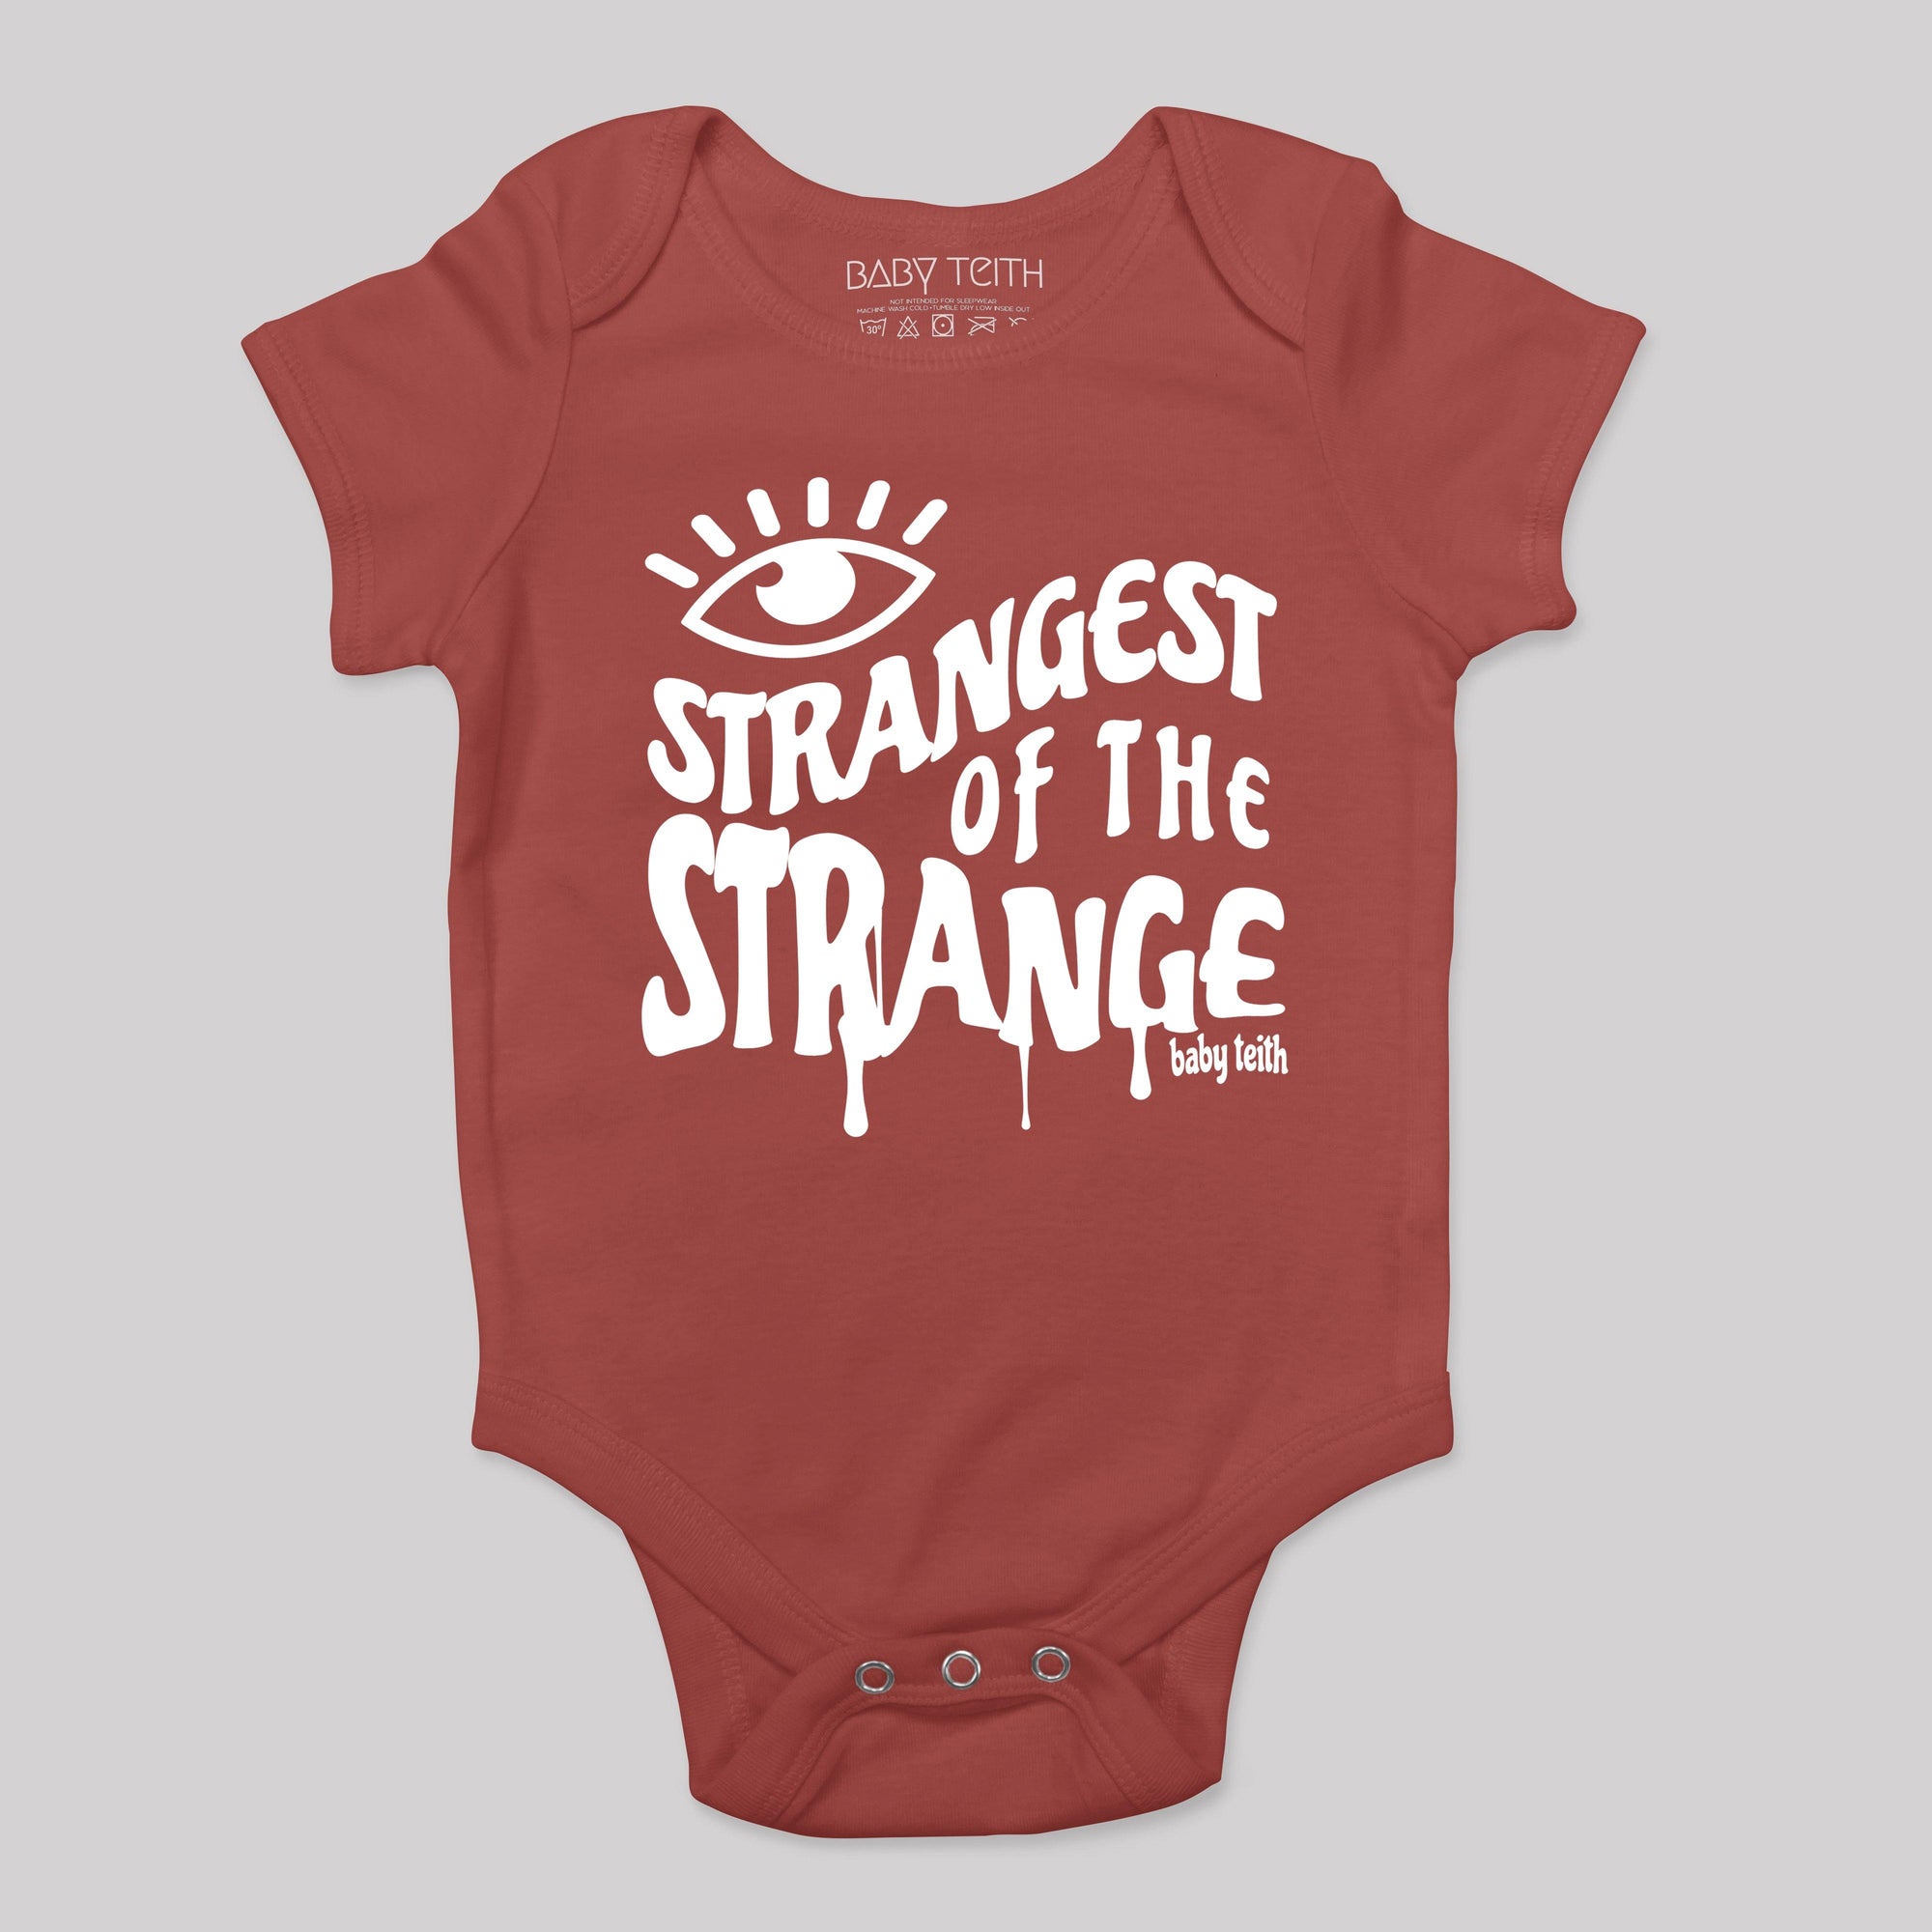 &quot;Strangest of the Strange&quot; Baby Bodysuit - Baby Teith